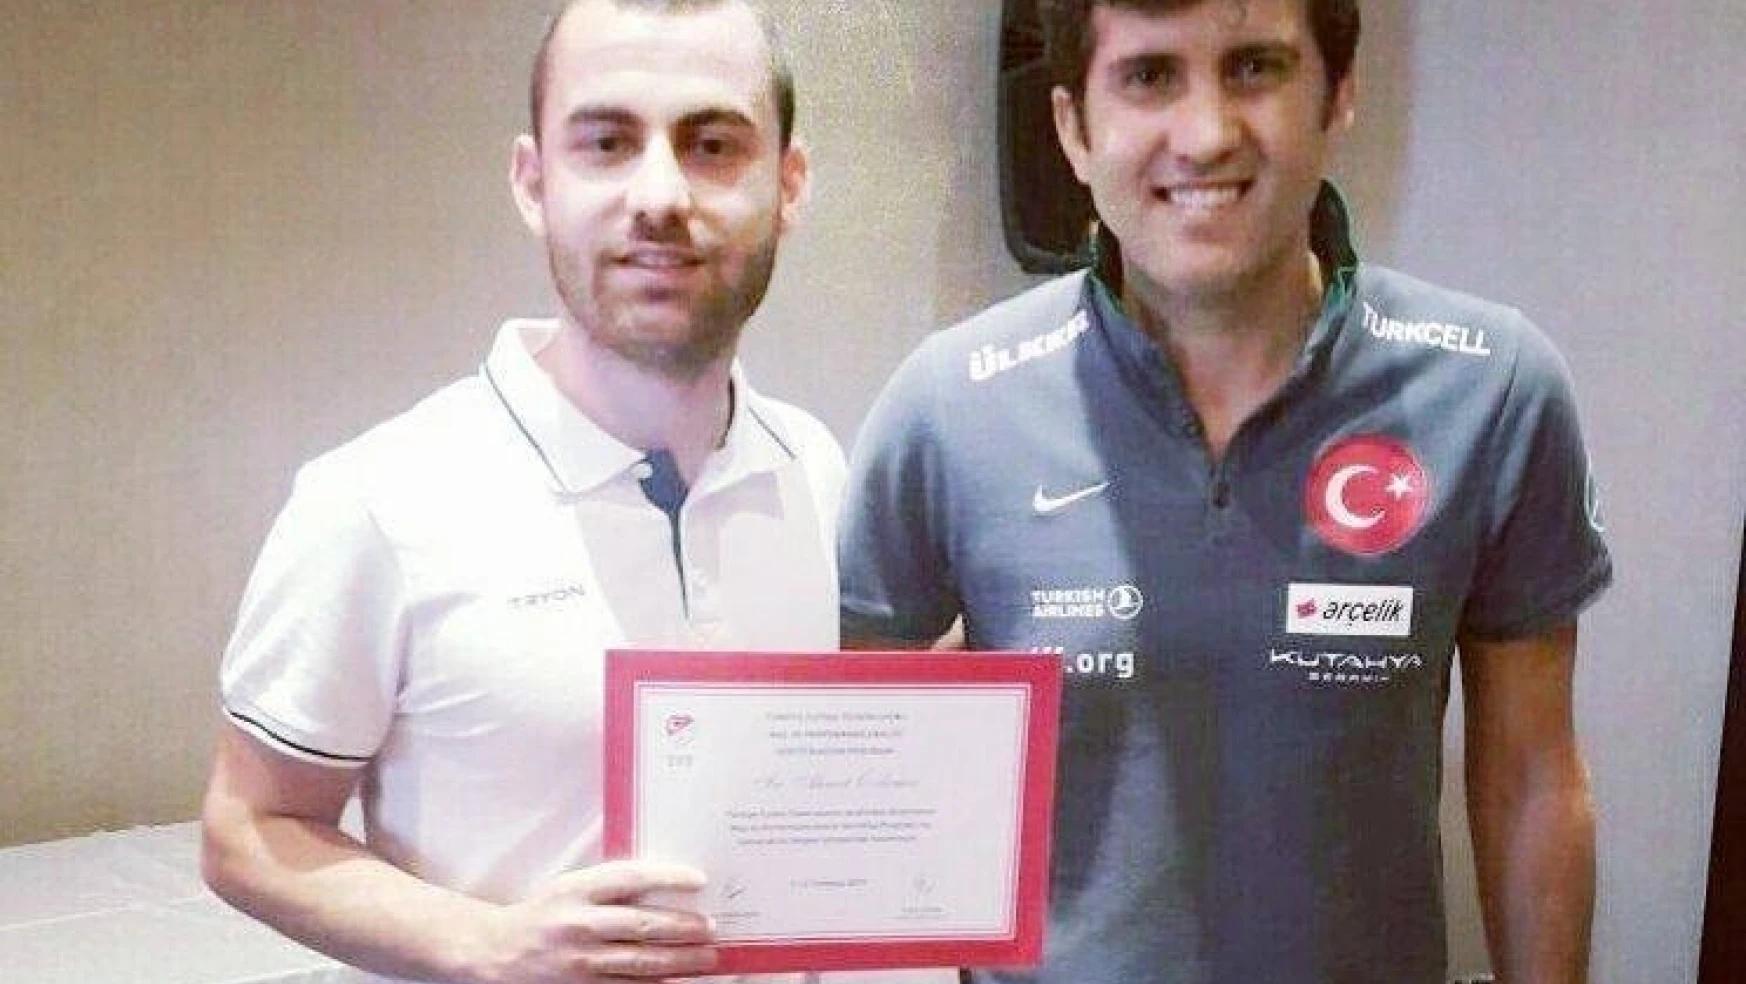 Malatyalı antrenör Türkiye'de bu belgeyi alan 46. antrenör oldu
